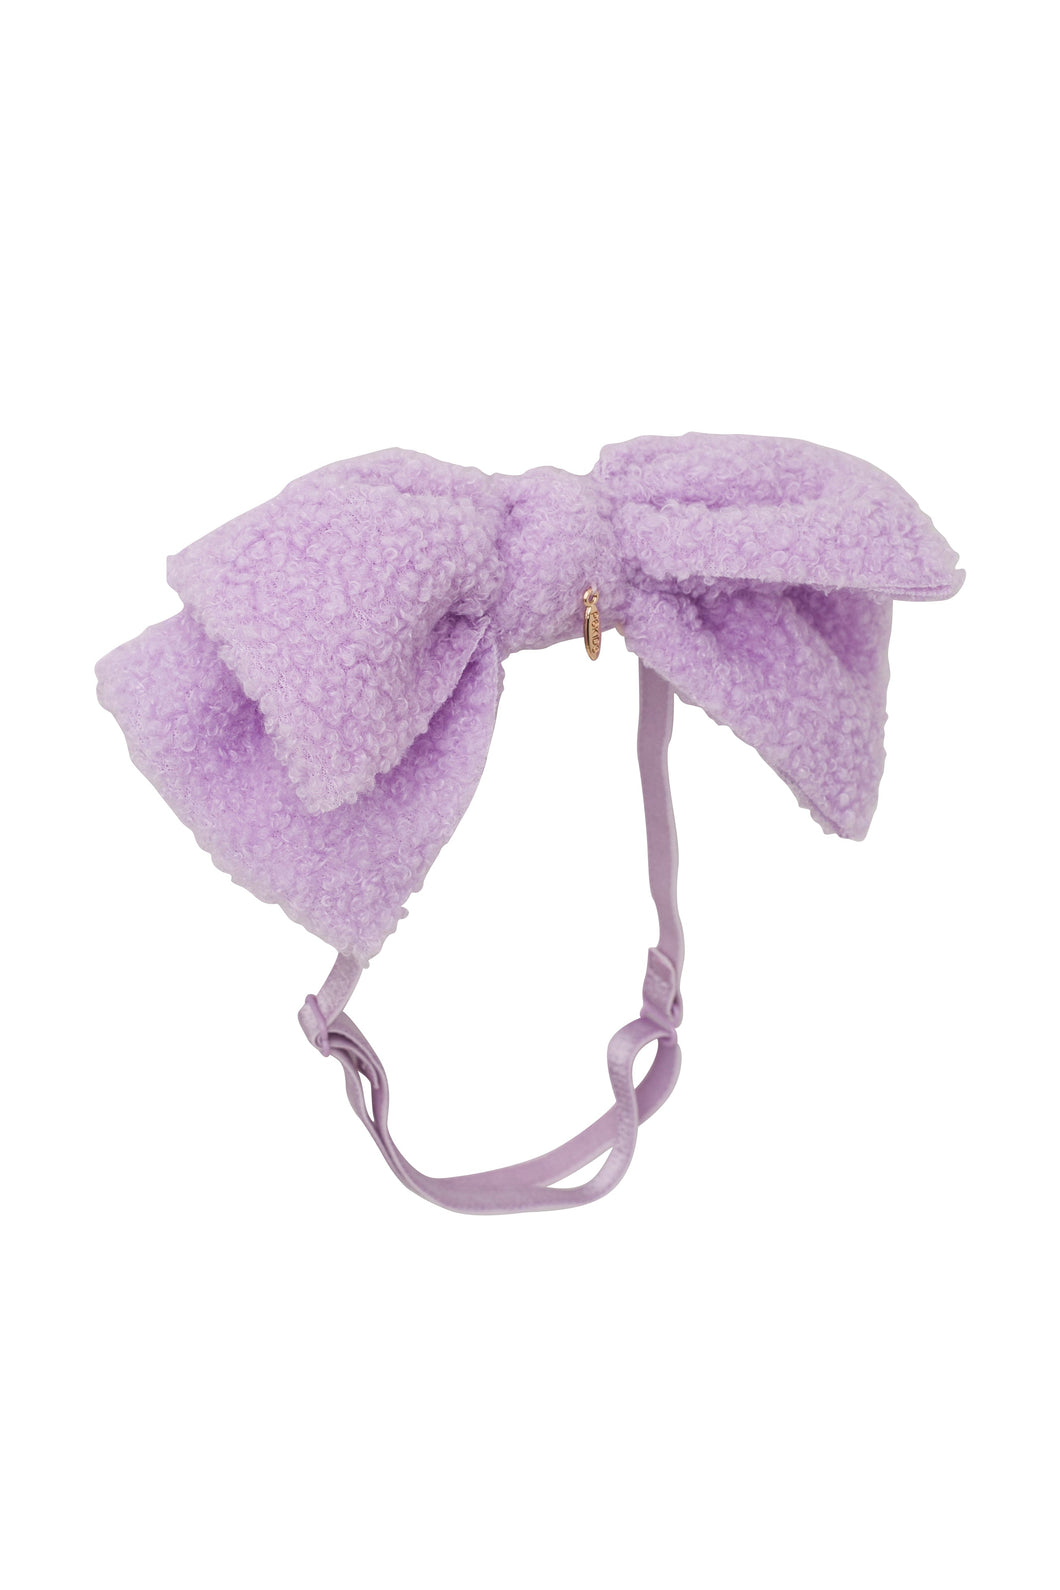 Fuzzy Floppy Wrap - Lilac Purple